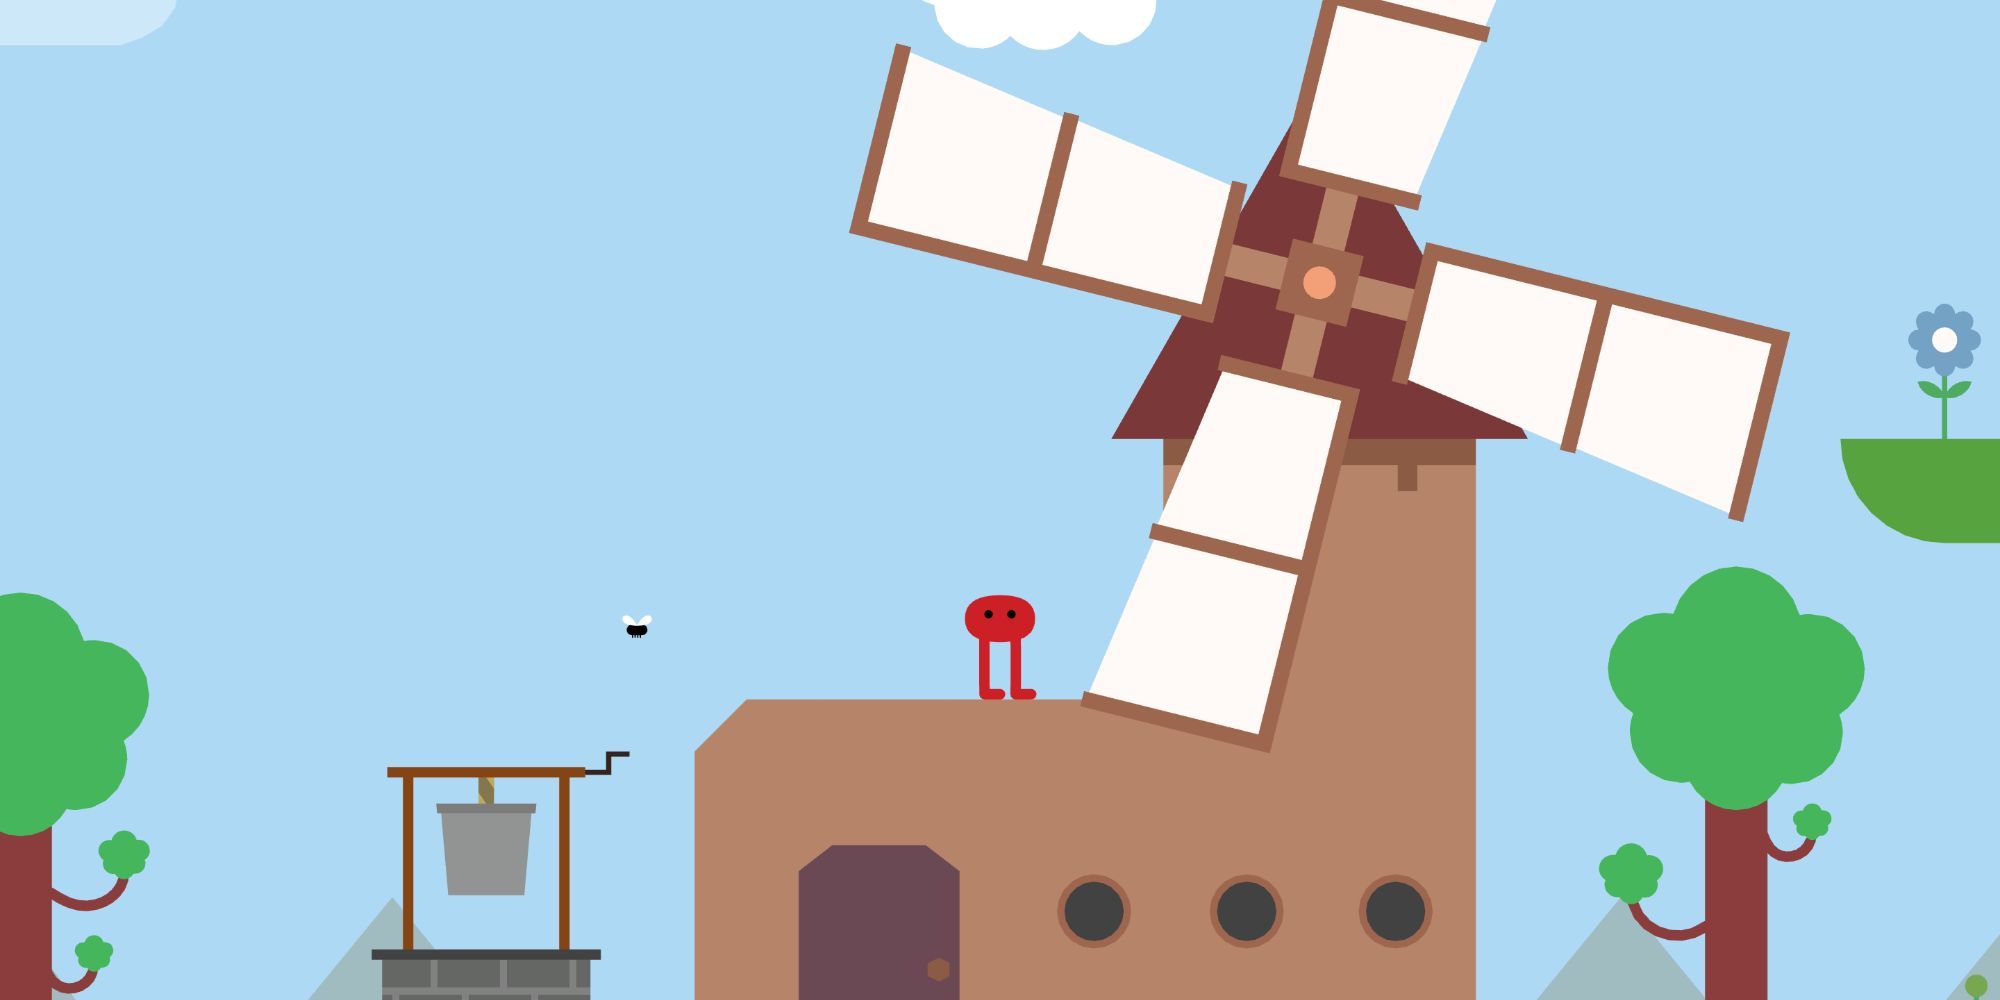 Pikuniku Character standing on windmill